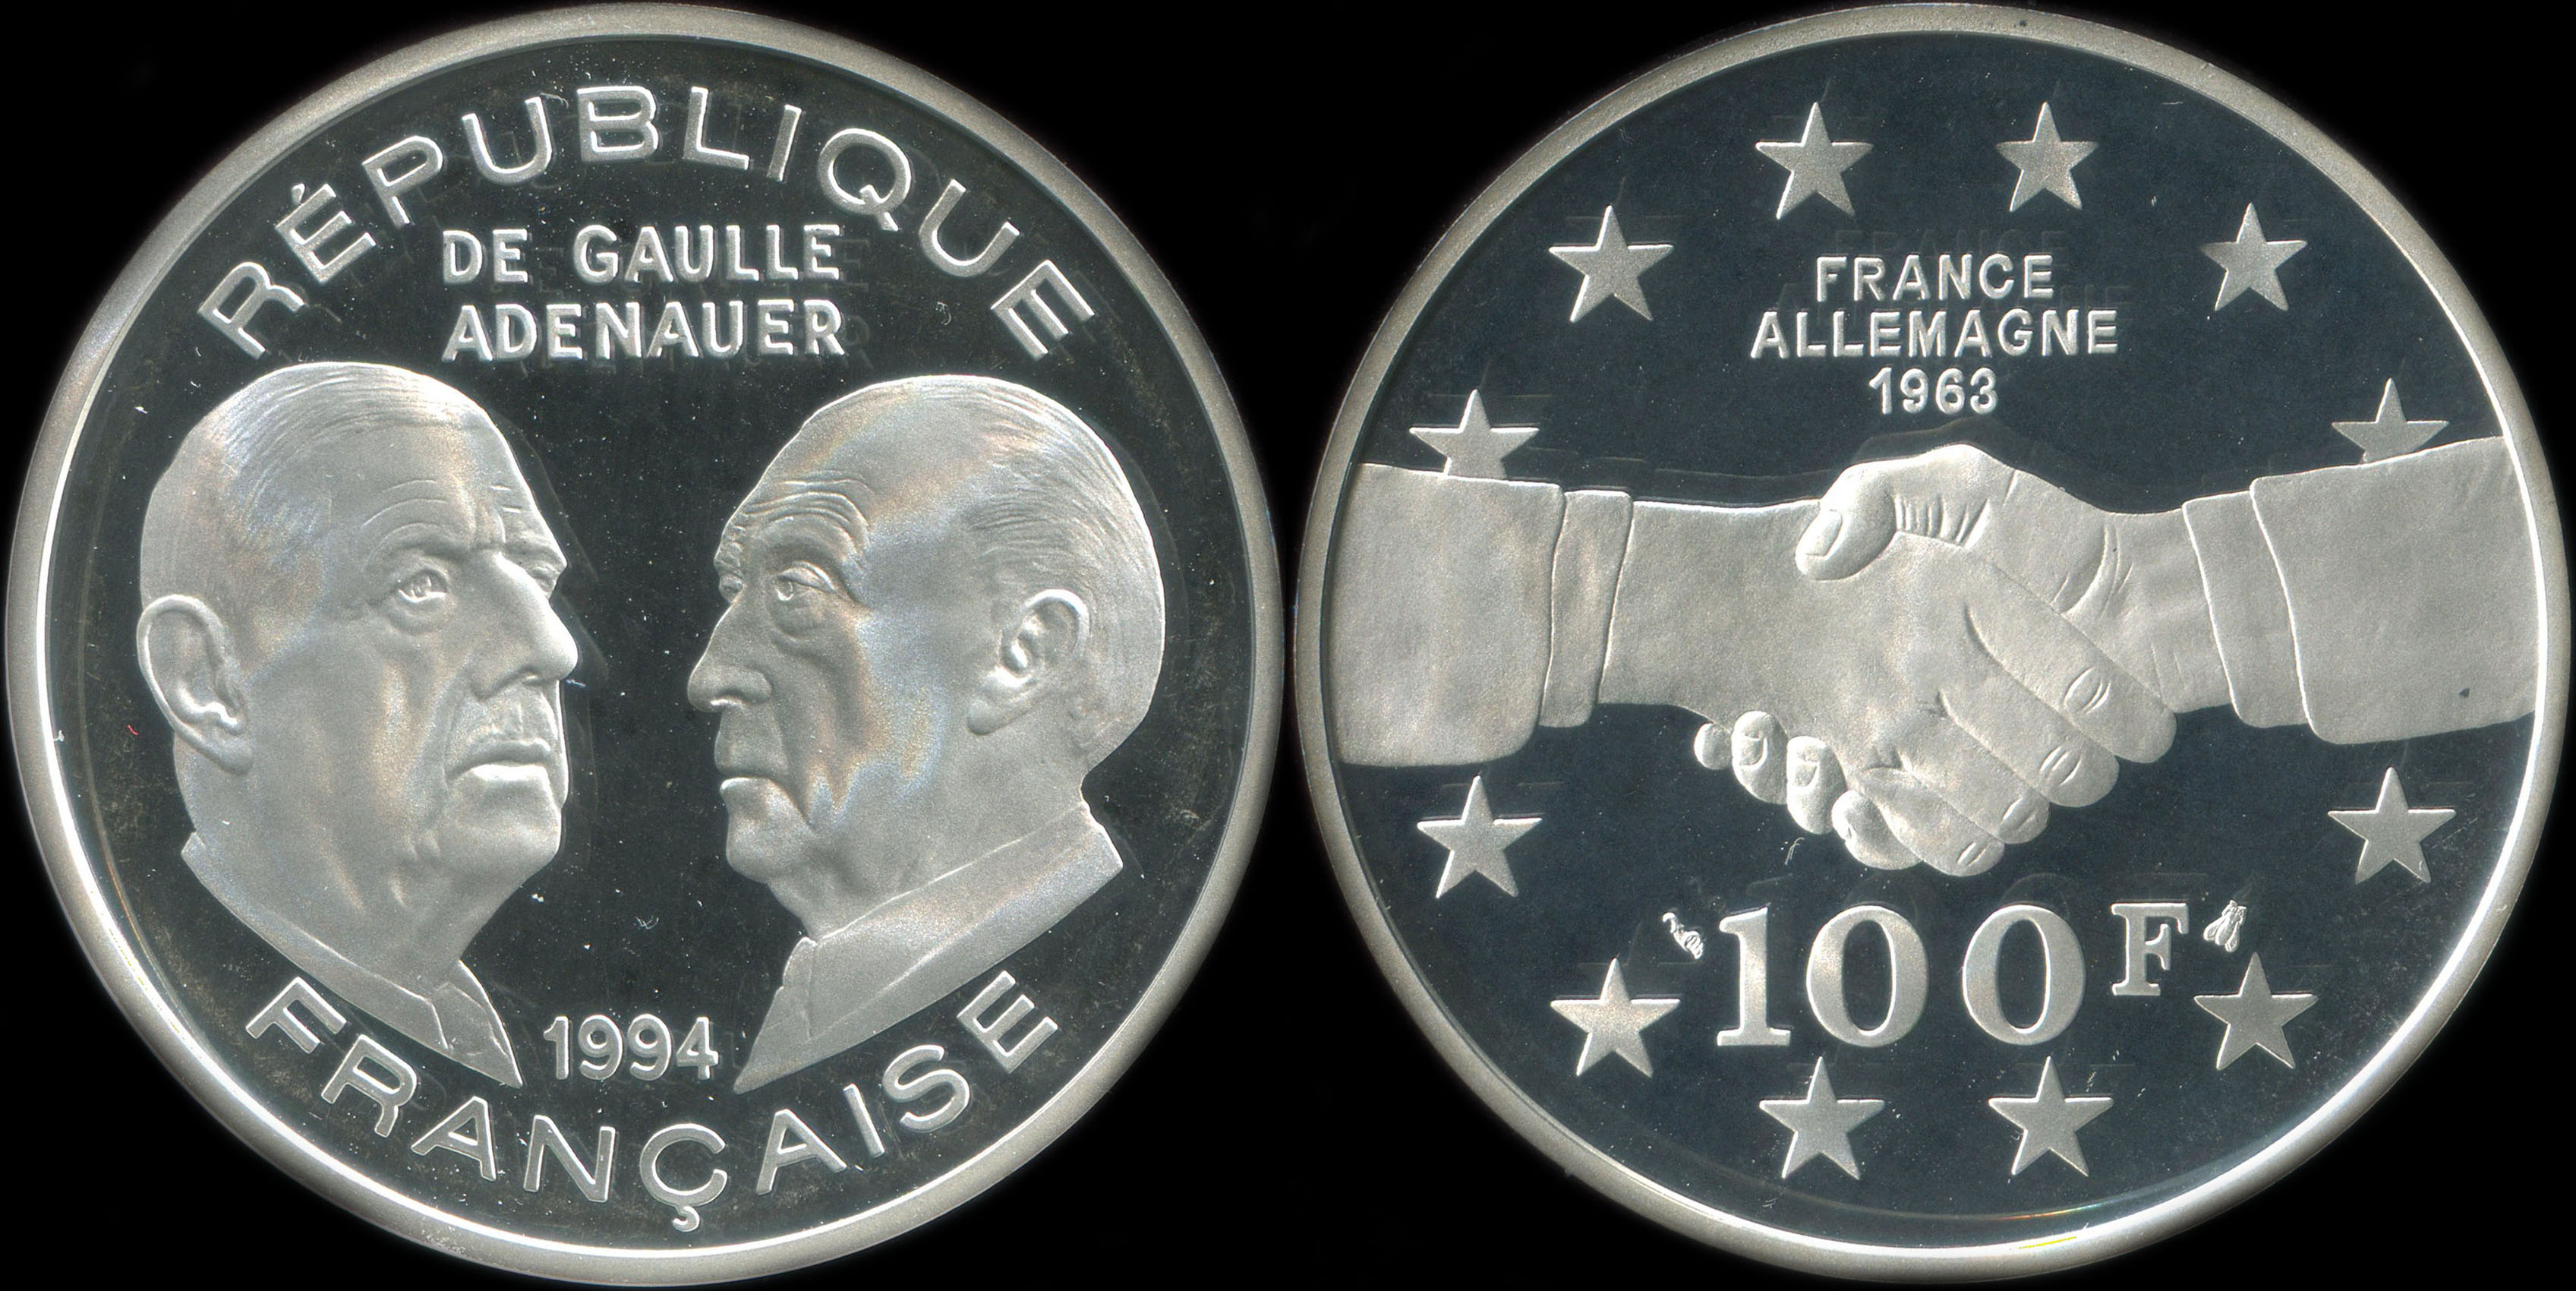 Pice de 100 francs 1994 - La Libert retrouve - De Gaulle/Adenauer